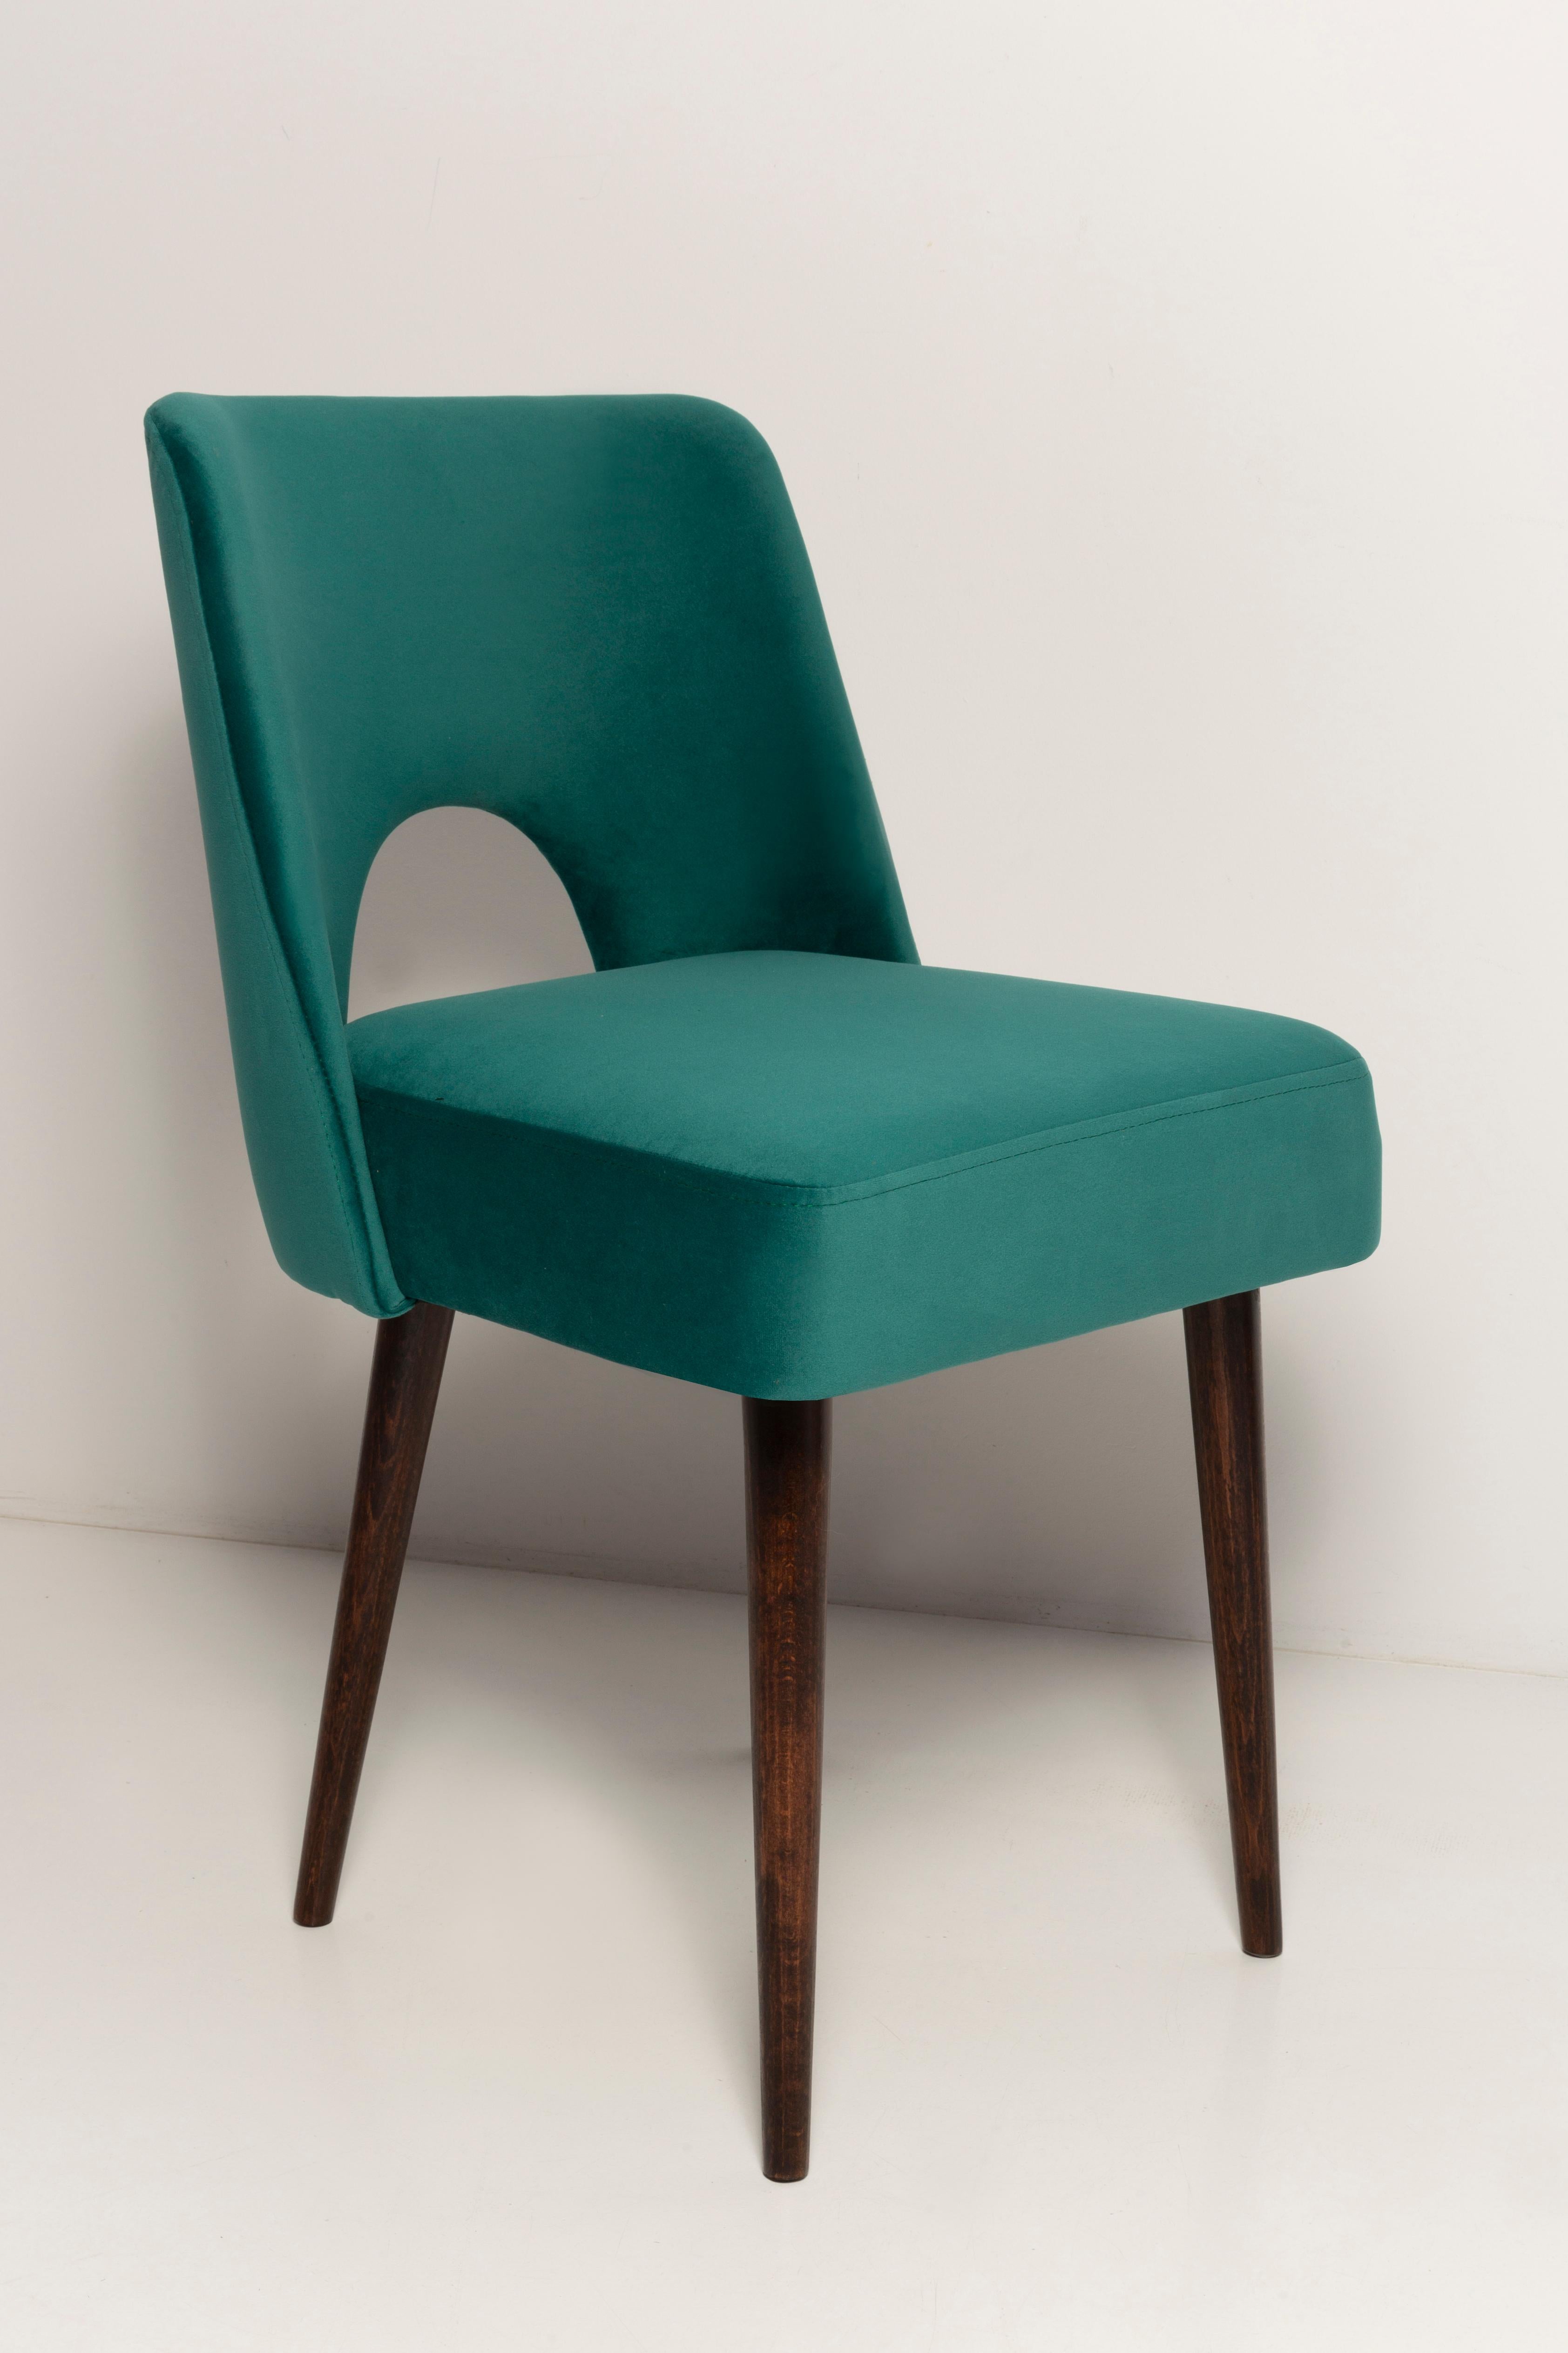 Hand-Crafted Seven Velvet 'Shell' Chairs, Dark Green Velvet, Dark Beech Wood, Europe, 1960s For Sale